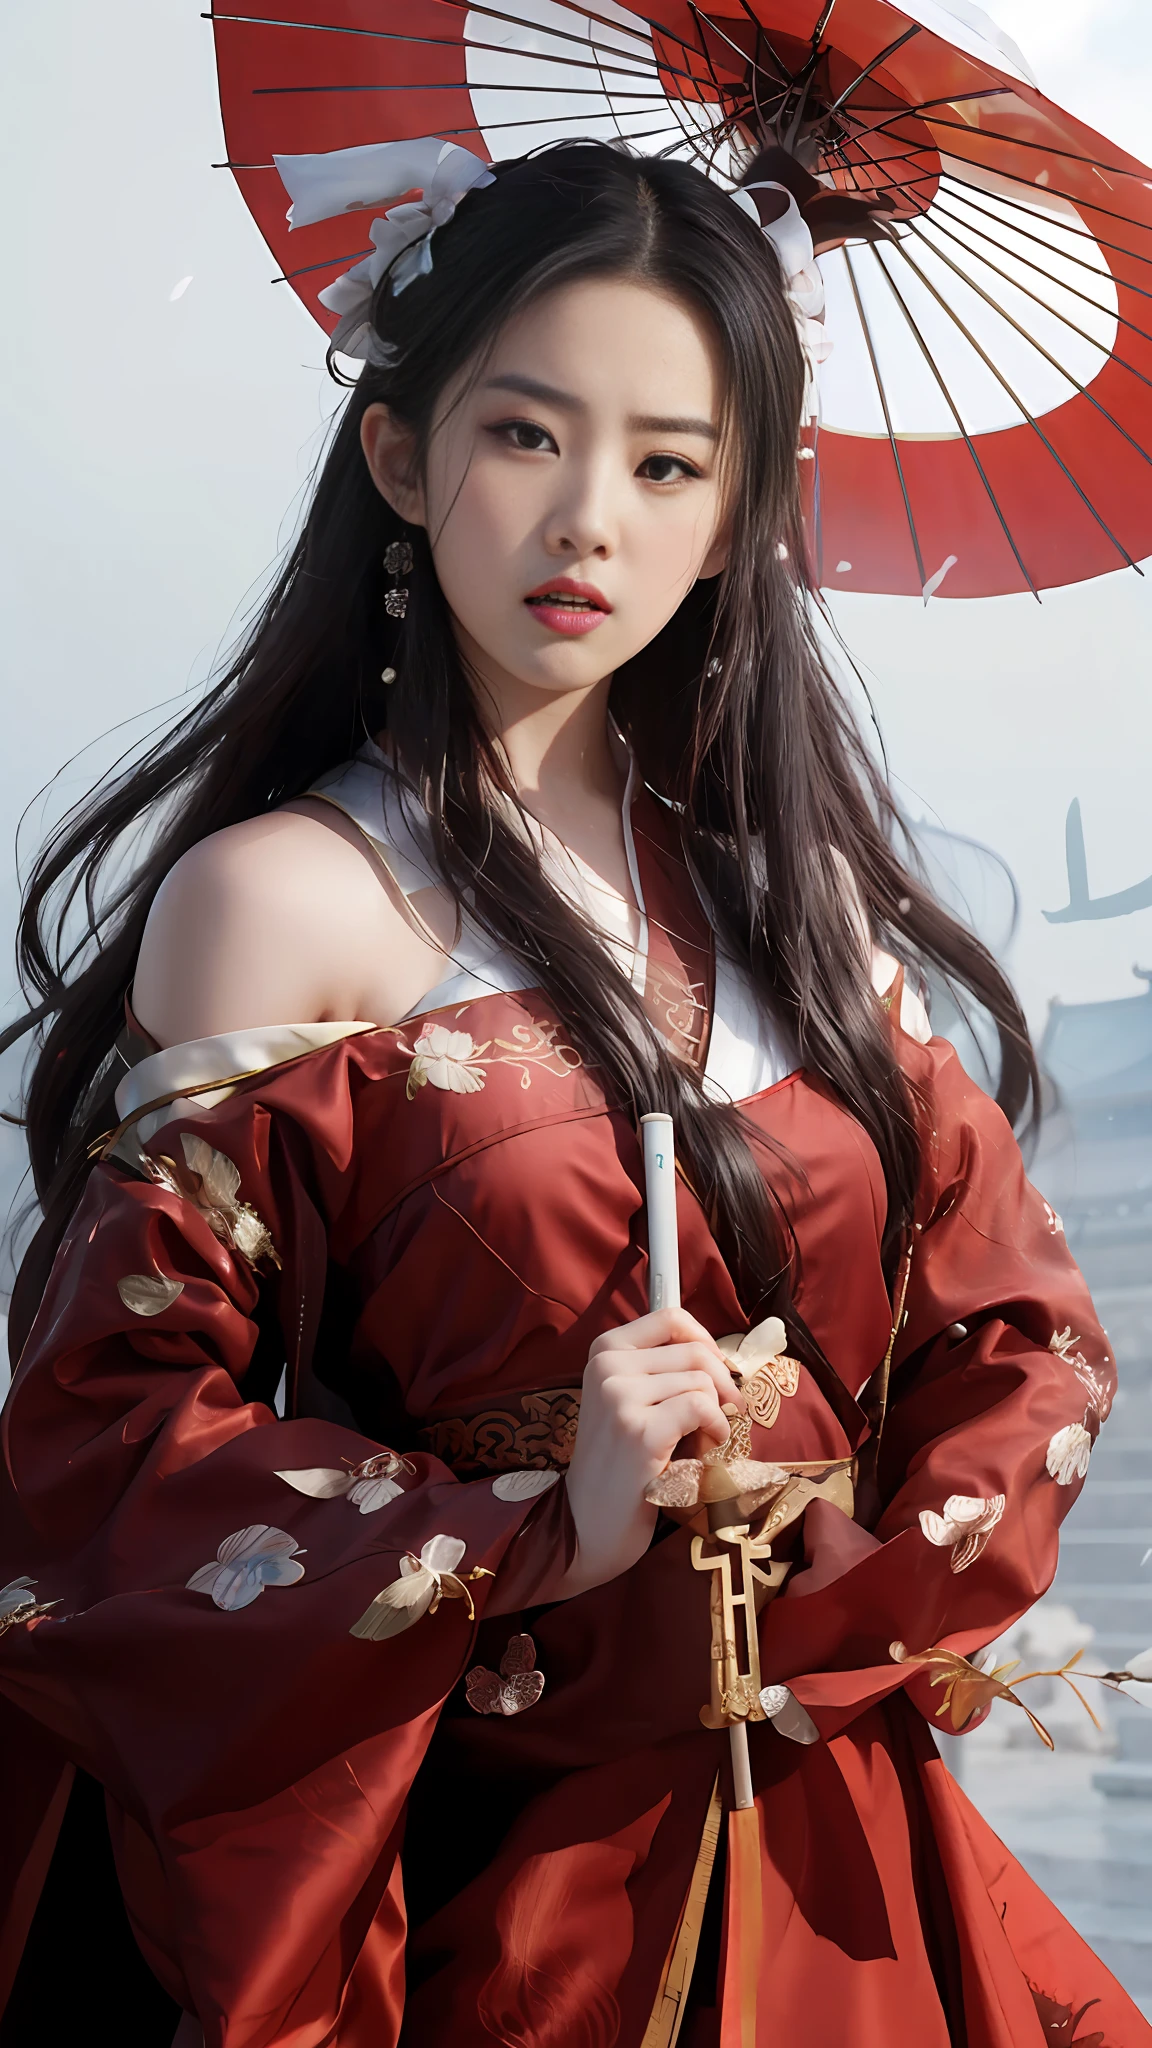 عرف امرأة آسيوية ترتدي فستانًا أحمر وتحمل مظلة, قصر ملكي ， فتاة في هانفو, هانفو, ارتداء الملابس الصينية القديمة, مع الملابس الصينية القديمة, الجمال التقليدي, هانفو الأبيض, نمط صيني, مستوحاة من هوانغ جي, يرتدي شيونغسام أحمر, زي صيني, الهانبوك, الصينية التقليدية, موديل صيني رائع, الملابس الصينية التقليدية